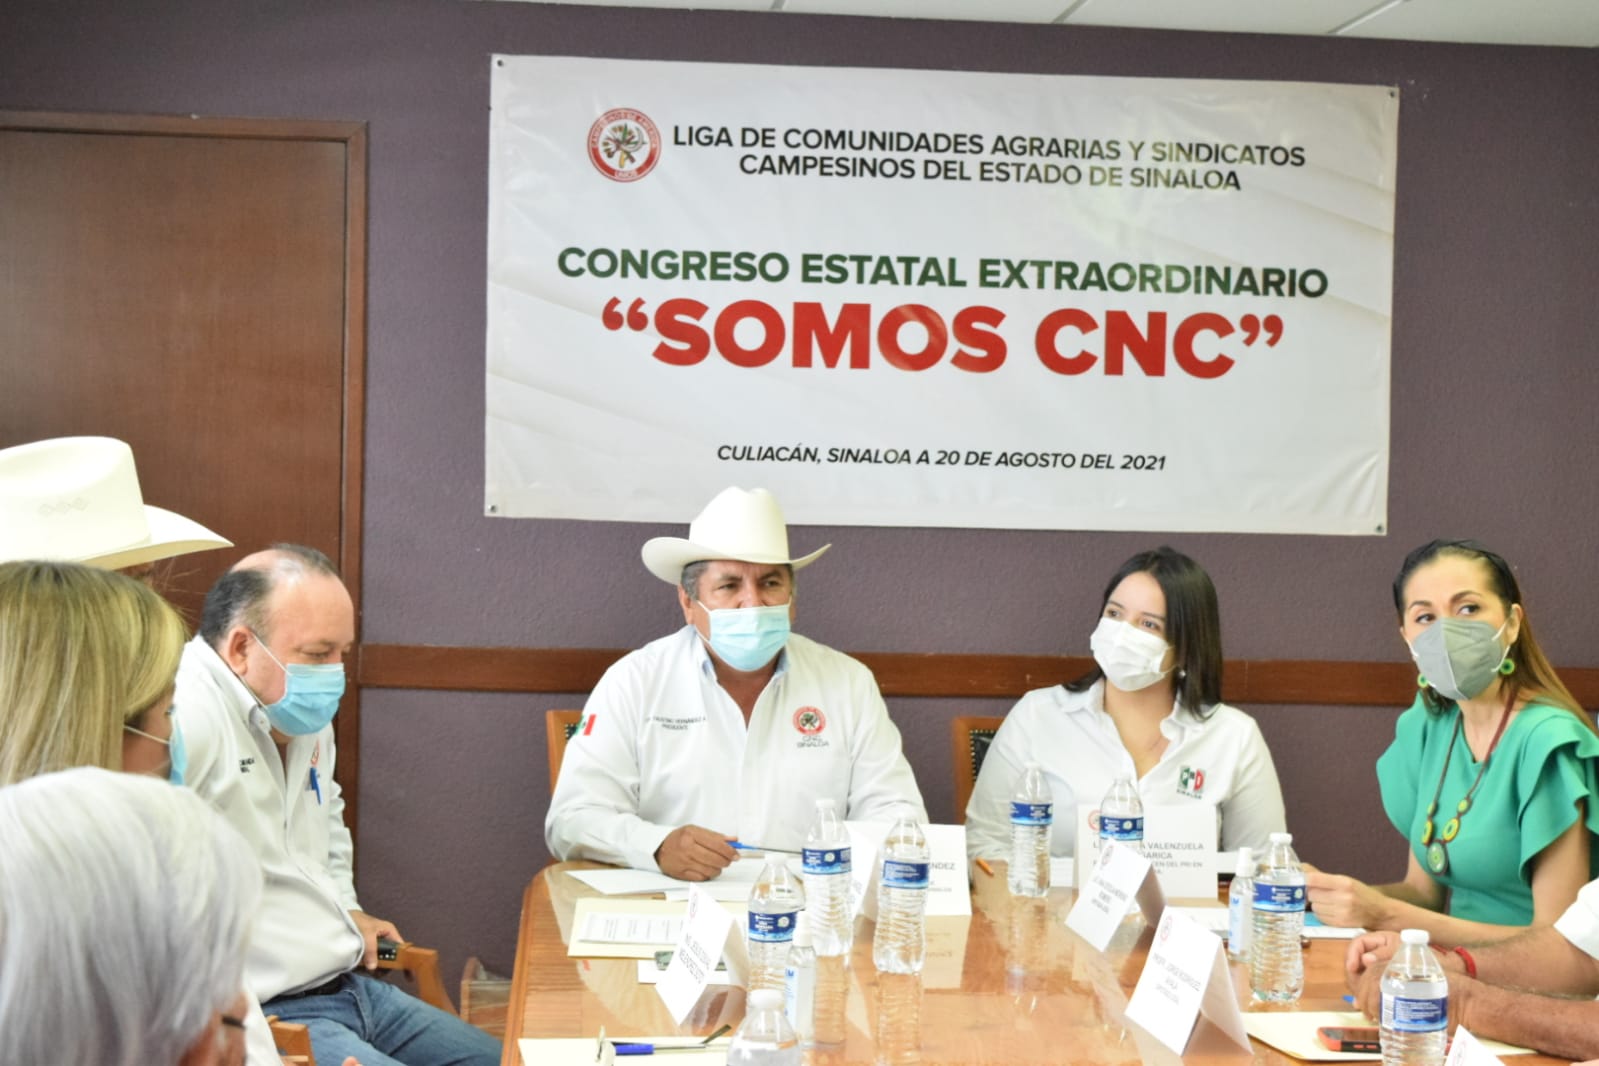 Ratificamos el compromiso con los campesinos de Sinaloa y México, reconocimiento total a nuestra organizac...